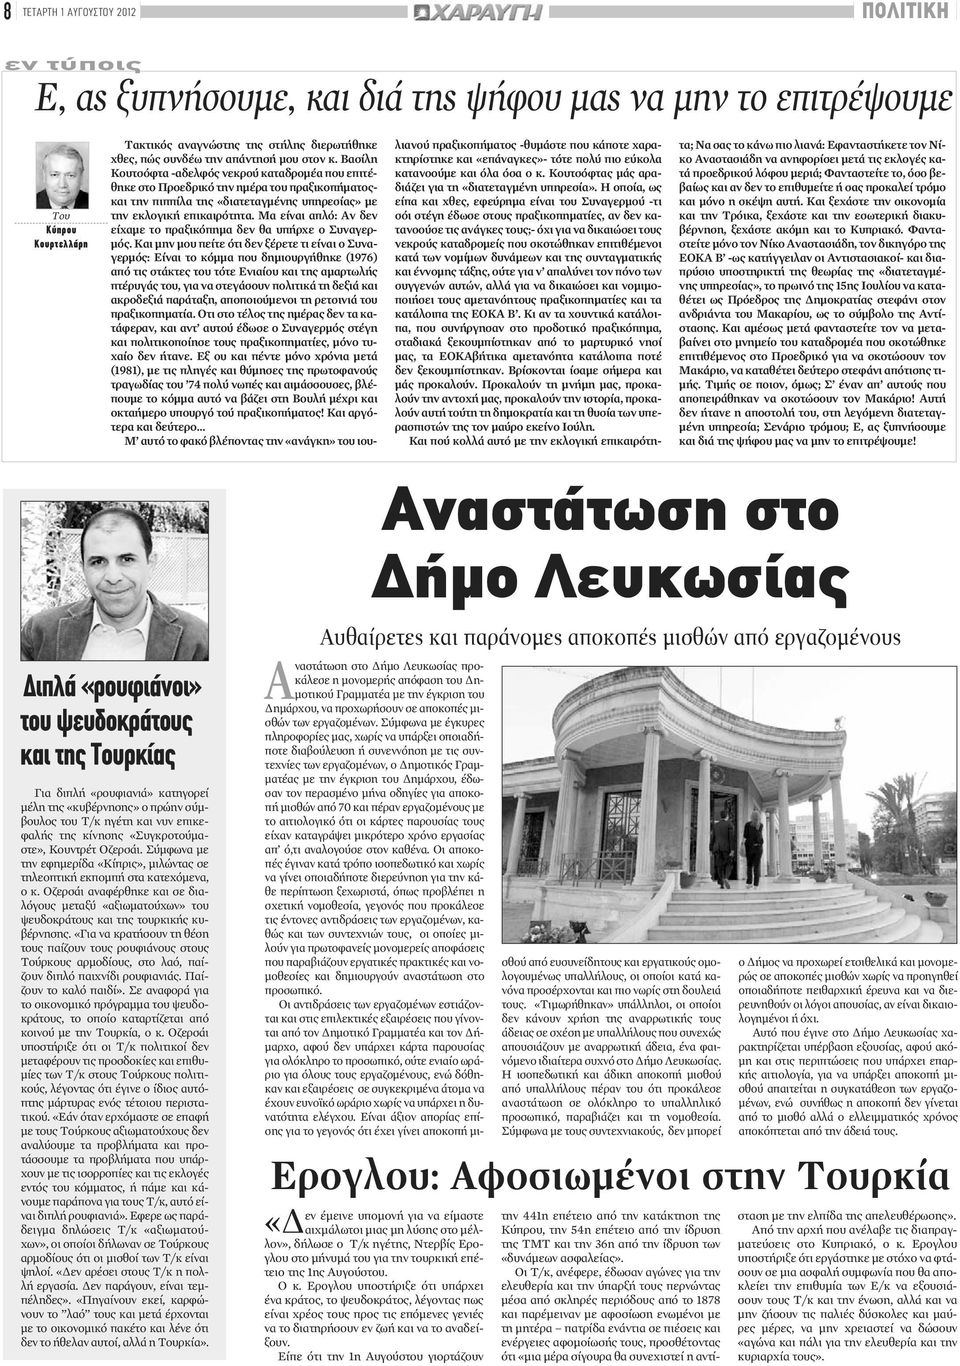 Σύμφωνα με την εφημερίδα «Κίπρις», μιλώντας σε τηλεοπτική εκπομπή στα κατεχόμενα, ο κ. Οζερσάι αναφέρθηκε και σε διαλόγους μεταξύ «αξιωματούχων» του ψευδοκράτους και της τουρκικής κυβέρνησης.